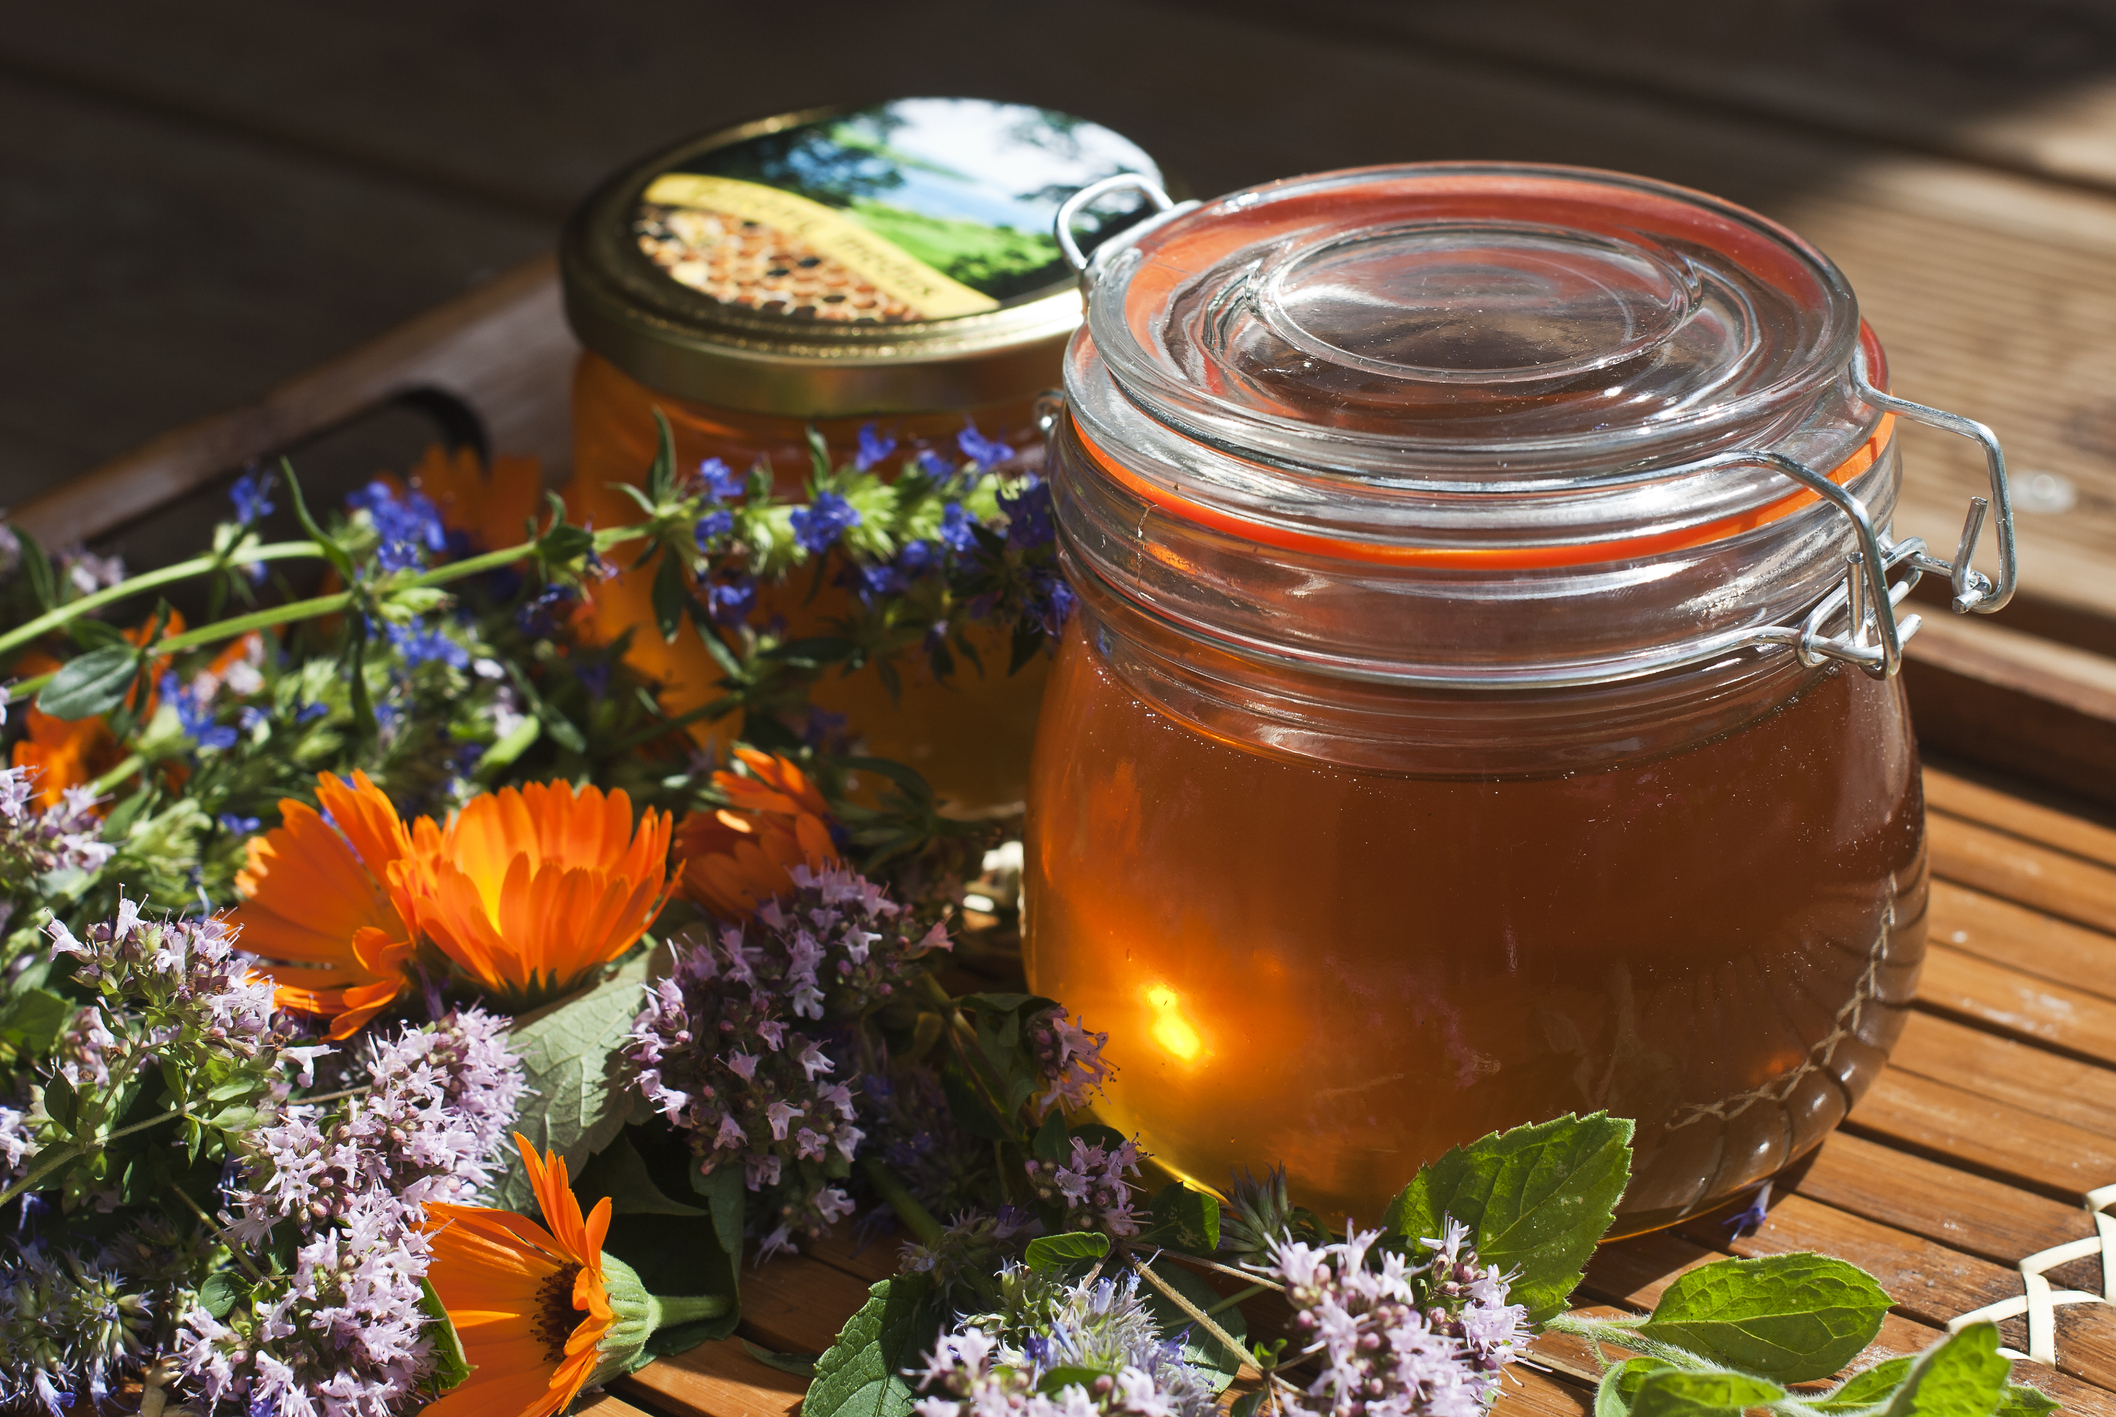 Горный мед (разнотравье) – полезные свойства и противопоказания, лечение медом